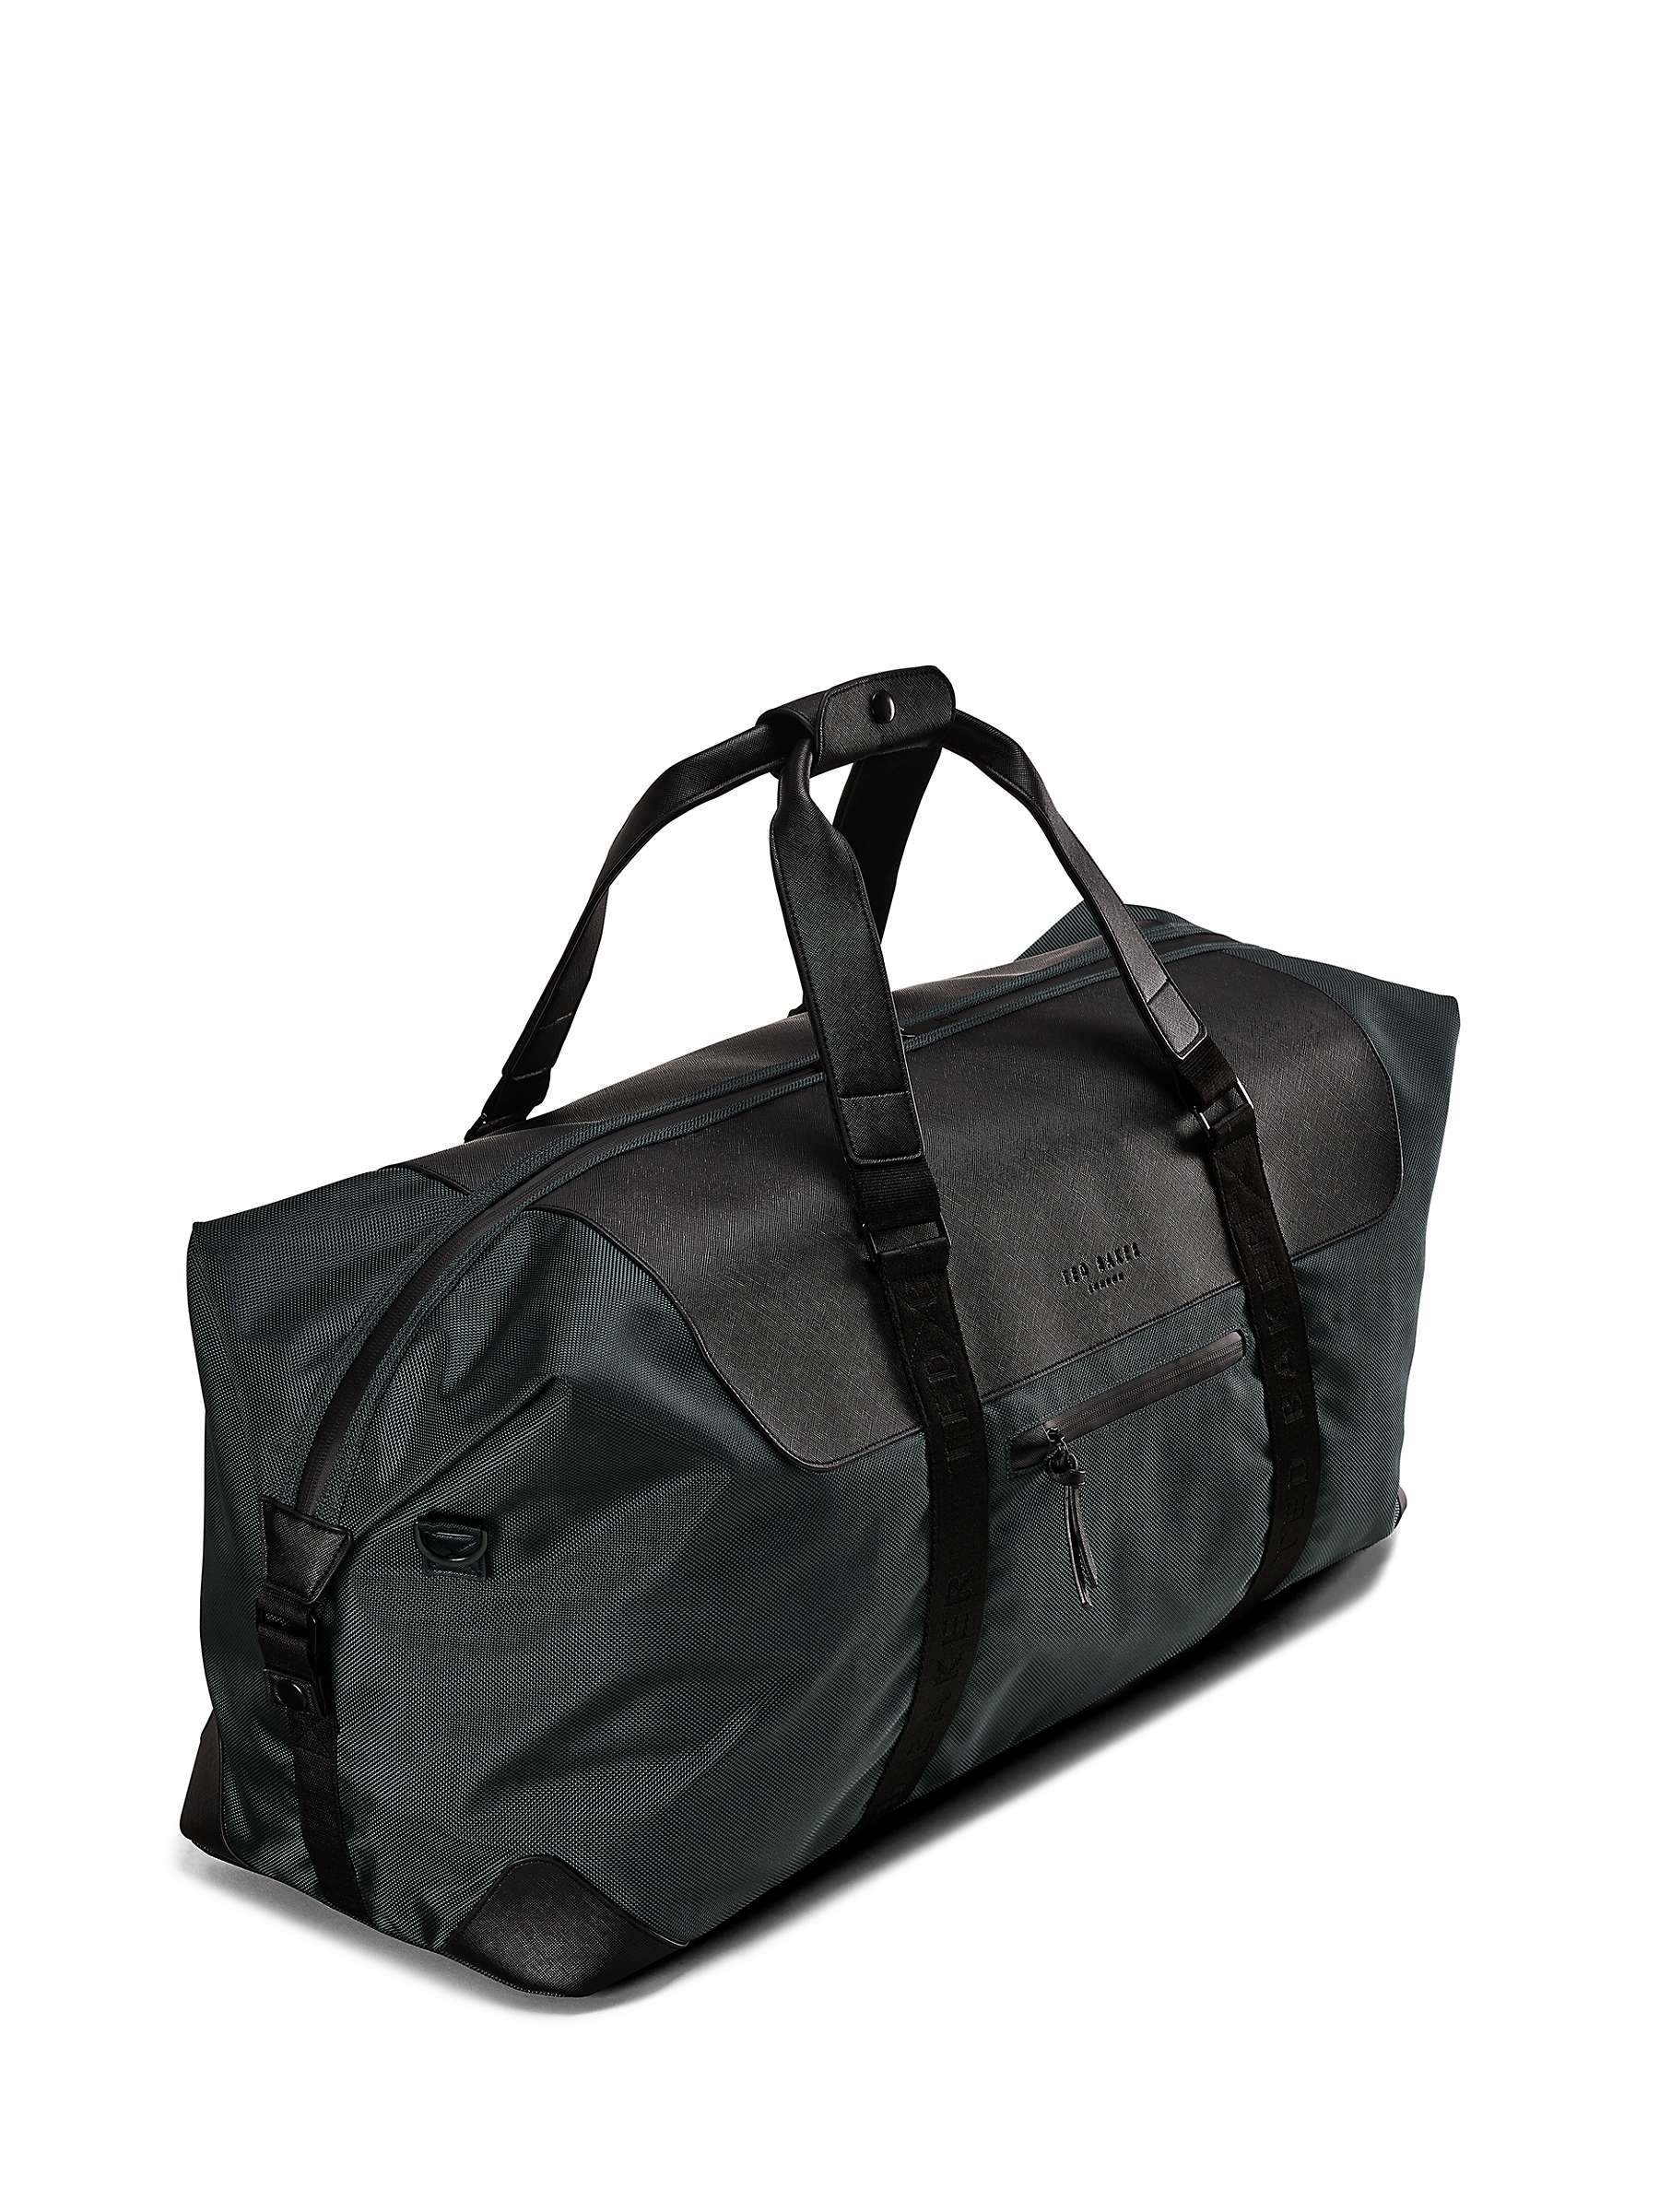 Buy Ted Baker Nomad Medium Duffle Bag, 50L, Pewter Grey Online at johnlewis.com